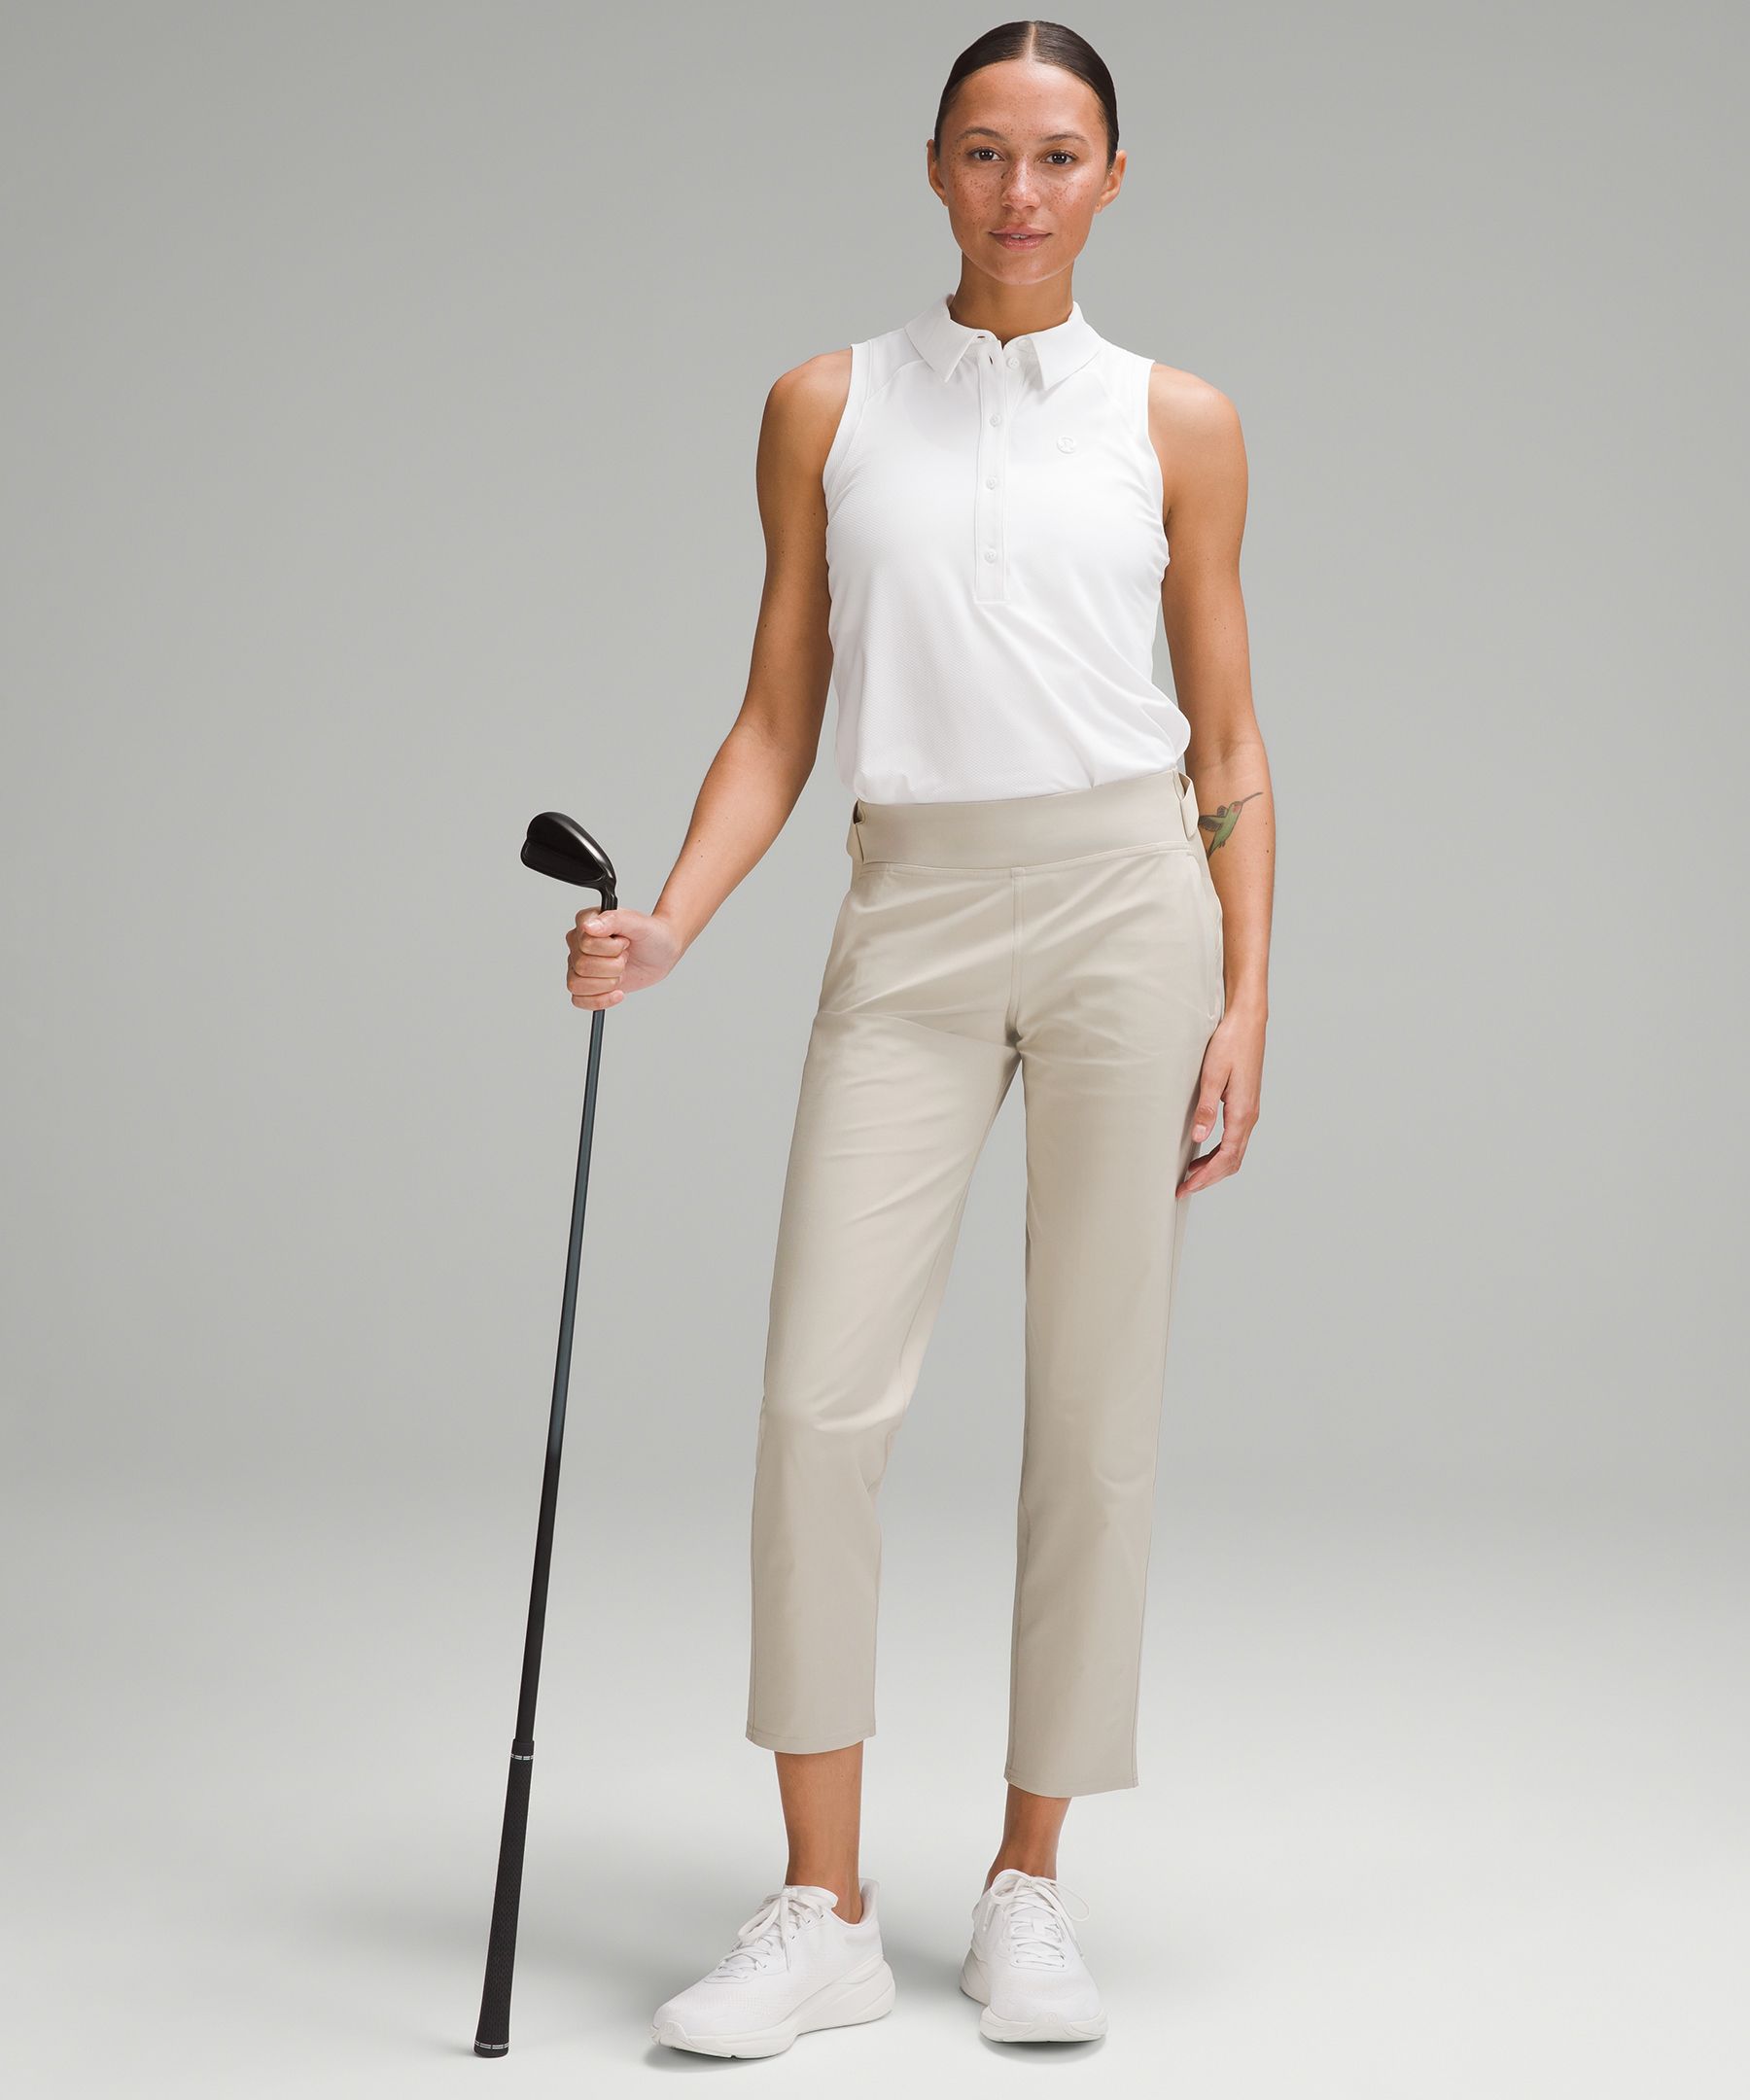 The best Lululemon women's golf pants, Golf Equipment: Clubs, Balls, Bags